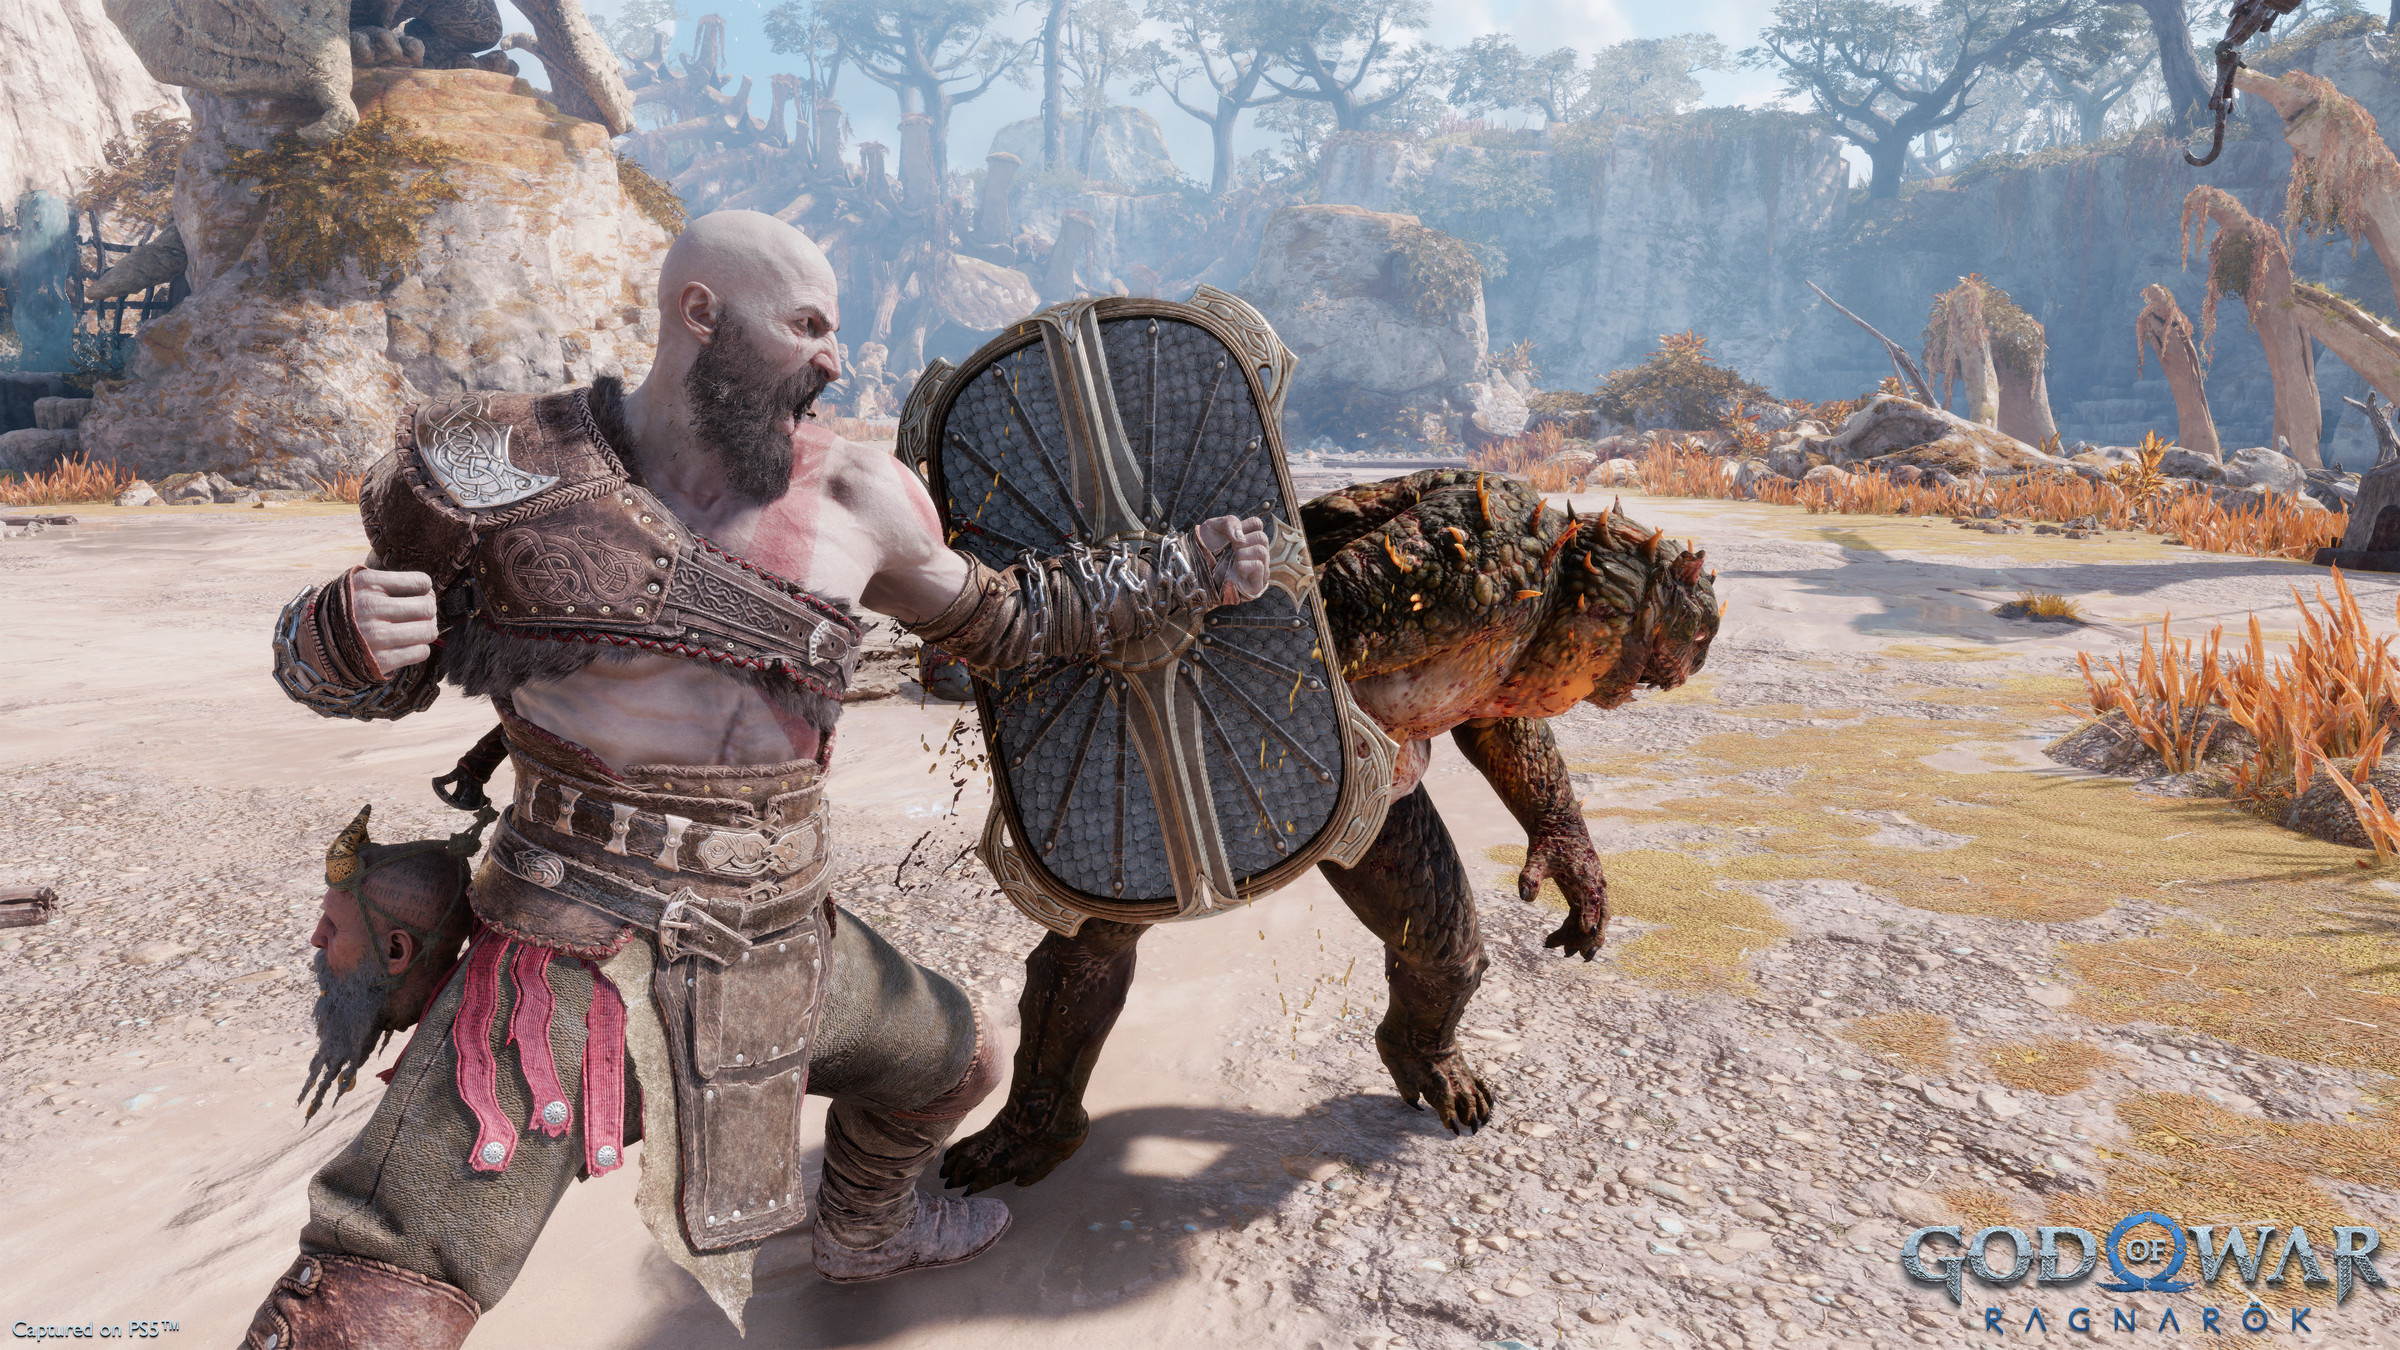 Kratos blocks an attack in God of War: Ragnarök.